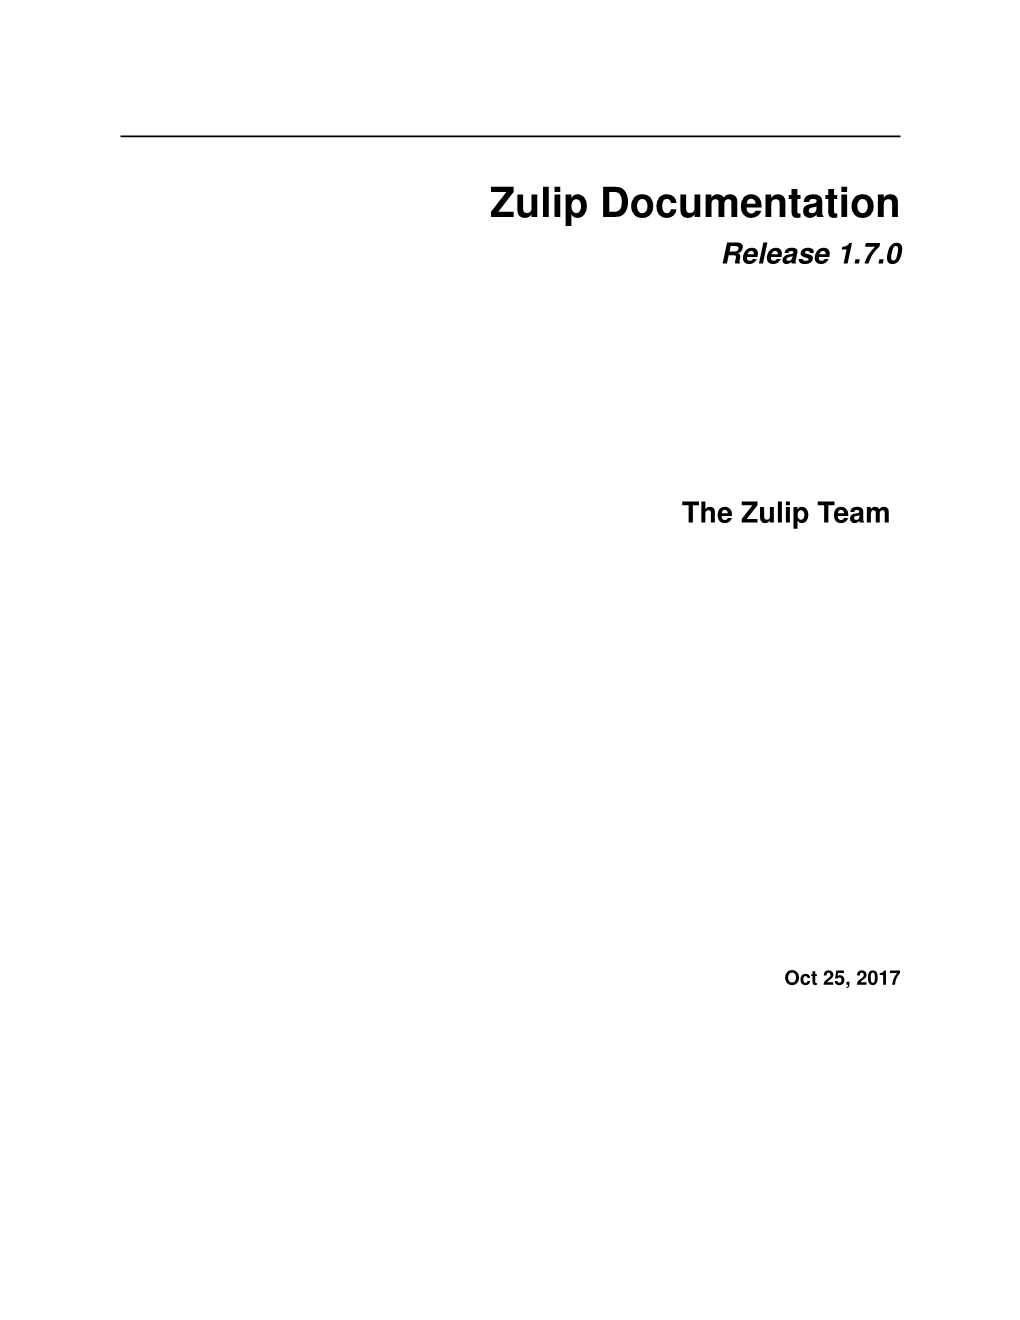 Zulip Documentation Release 1.7.0